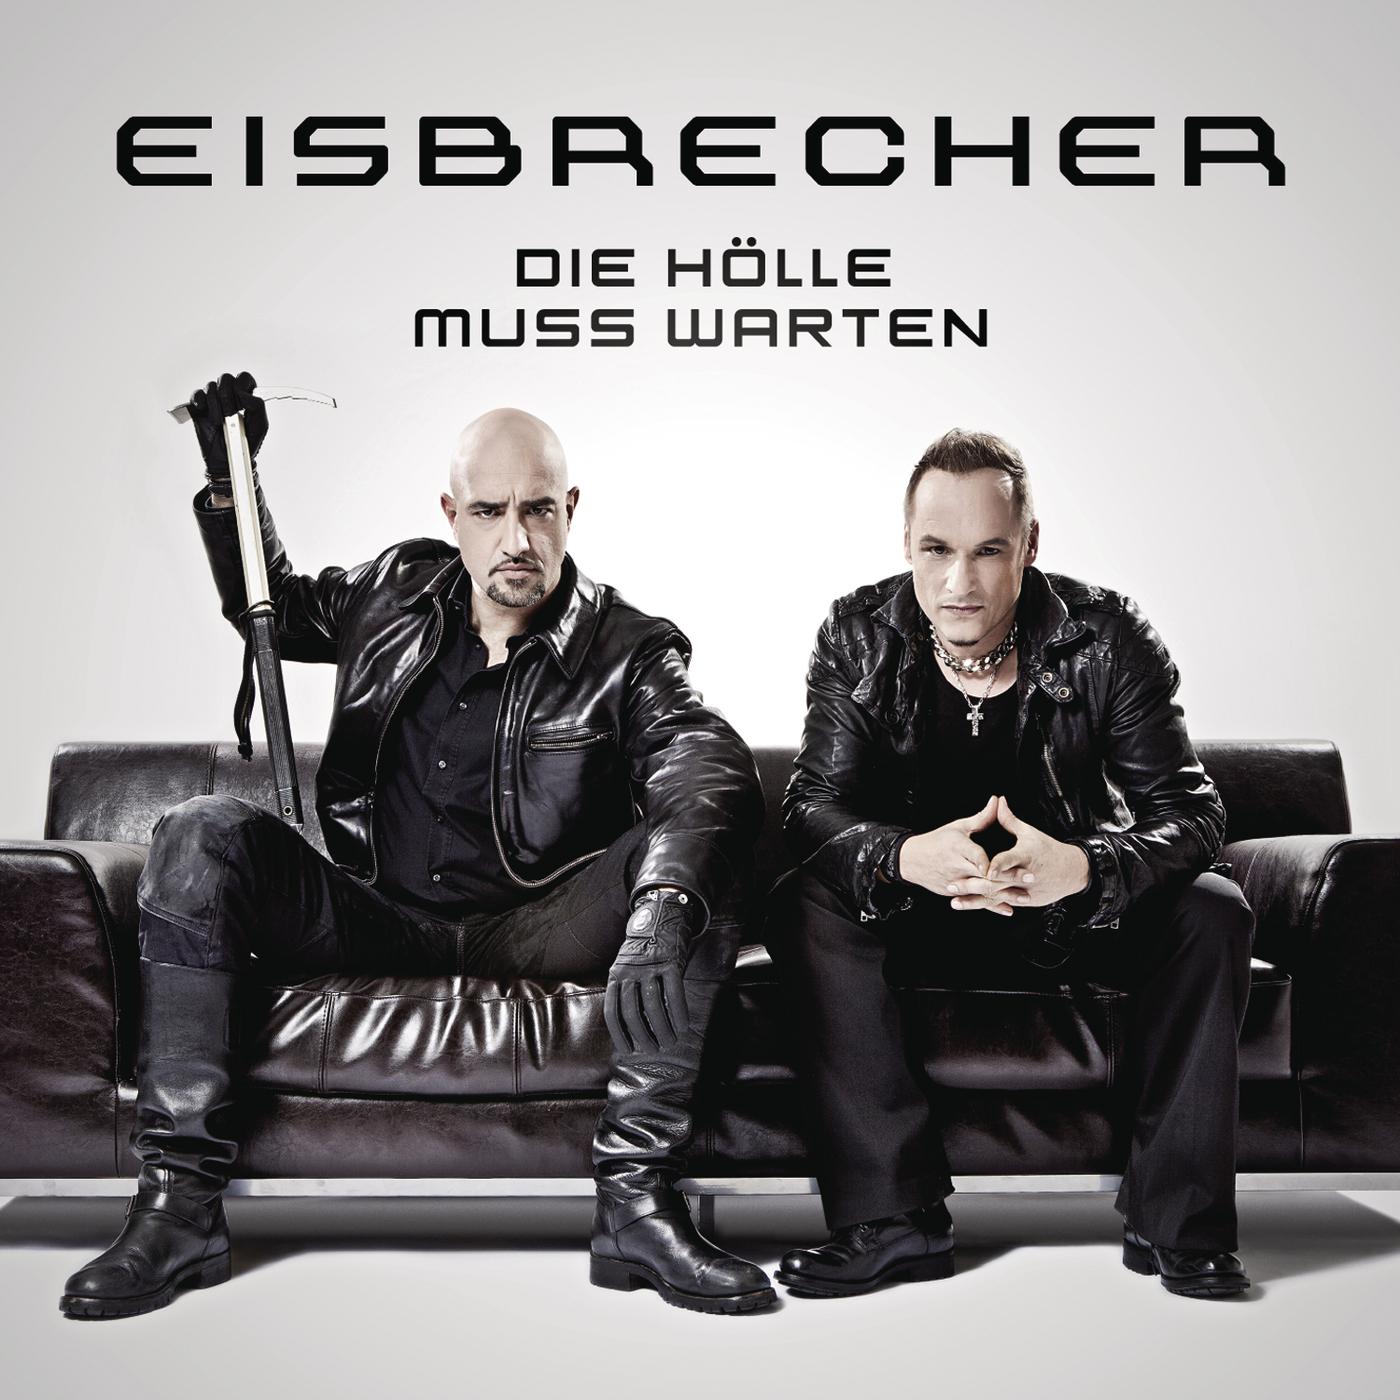 Eisbrecher rot wie. Группа Eisbrecher. Солист группы Eisbrecher. Обложки группы Eisbrecher. Eisbrecher барабанщик.